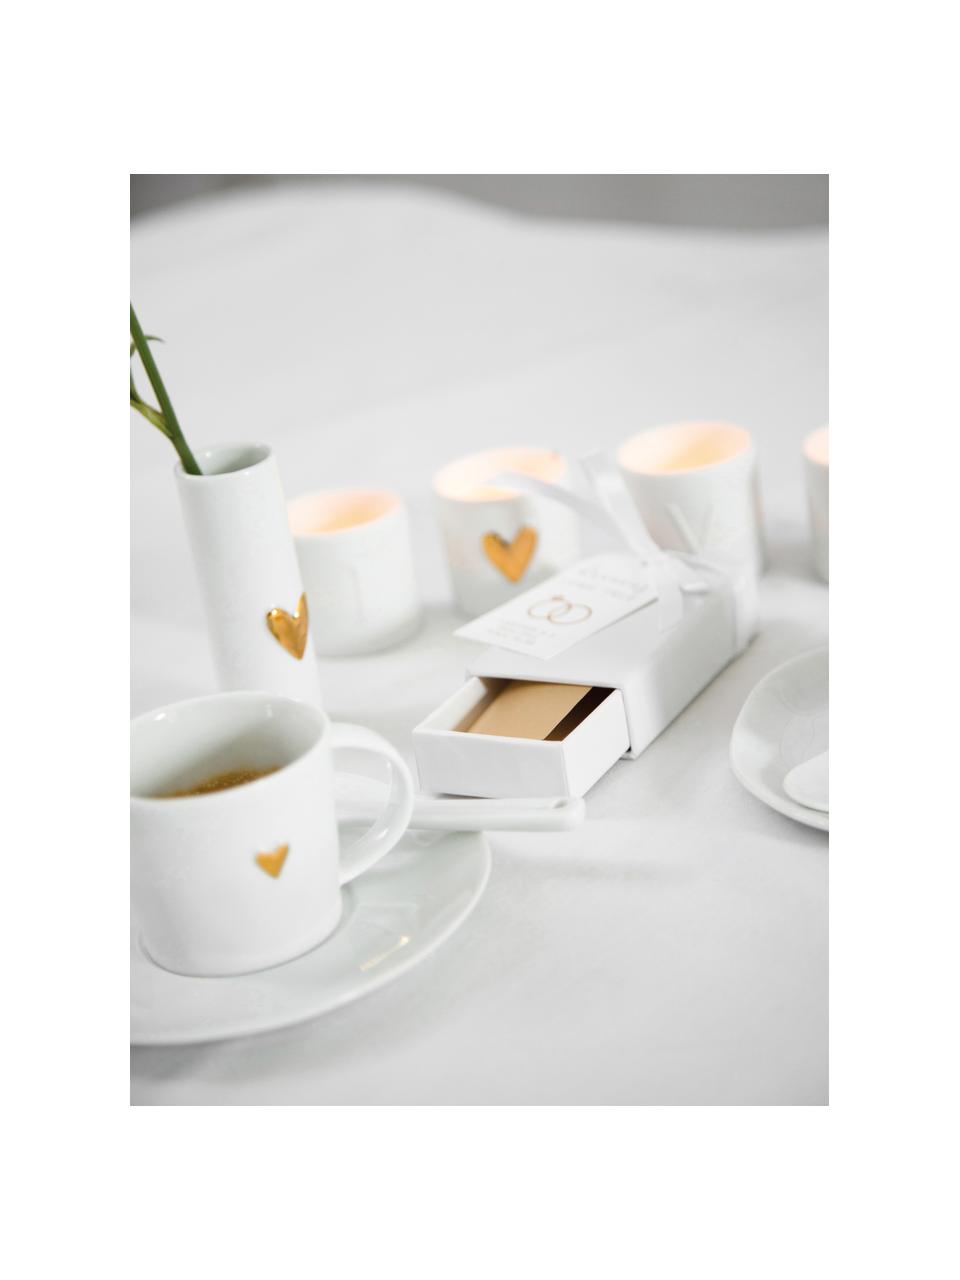 Espressokopje Heart met schoteltje van porselein, Geglazuurd porselein, Wit, goudkleurig, Ø 6 x H 5 cm, 80 ml